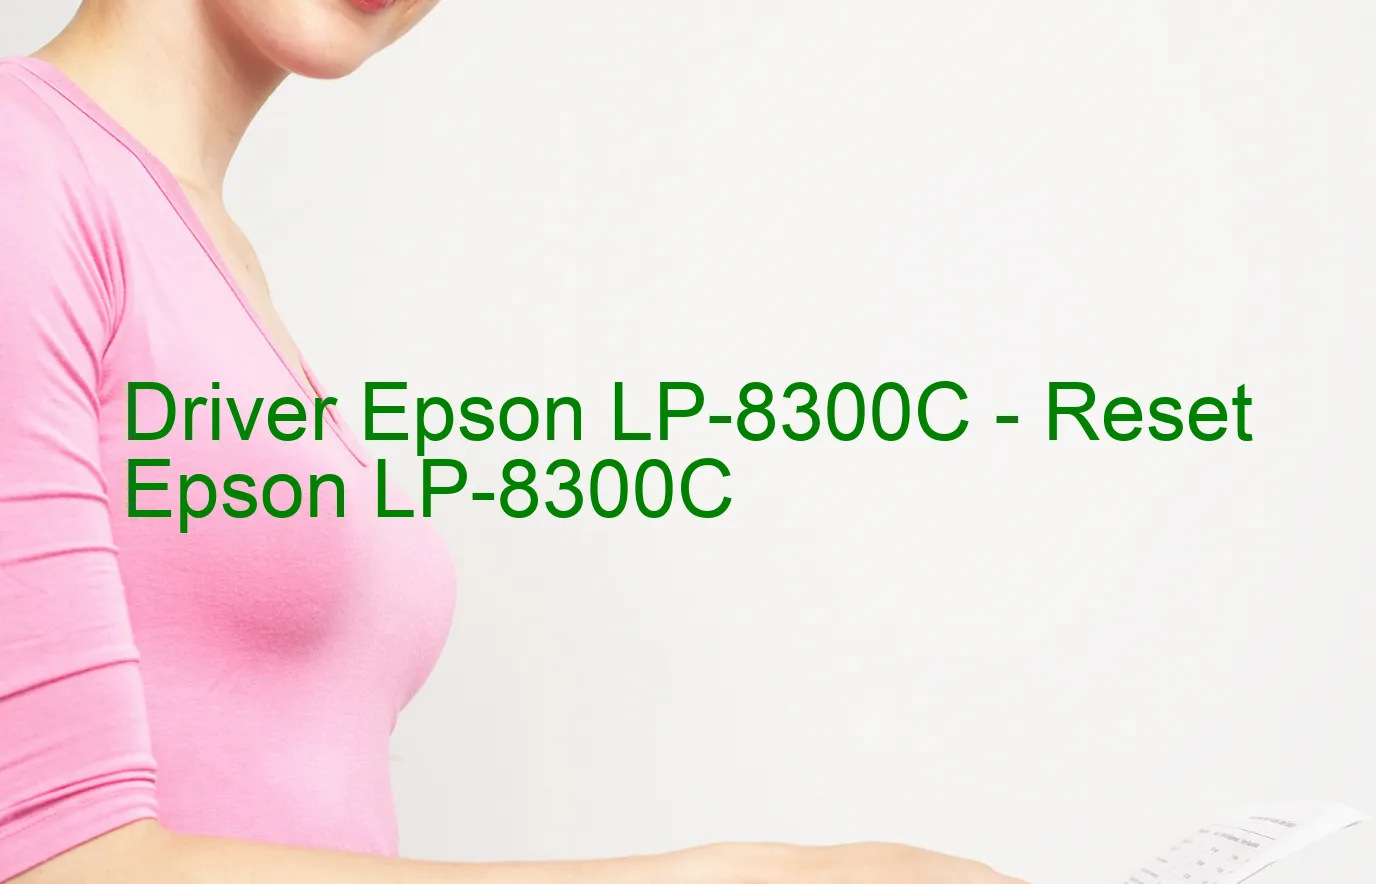 Epson LP-8300Cのドライバー、Epson LP-8300Cのリセットソフトウェア